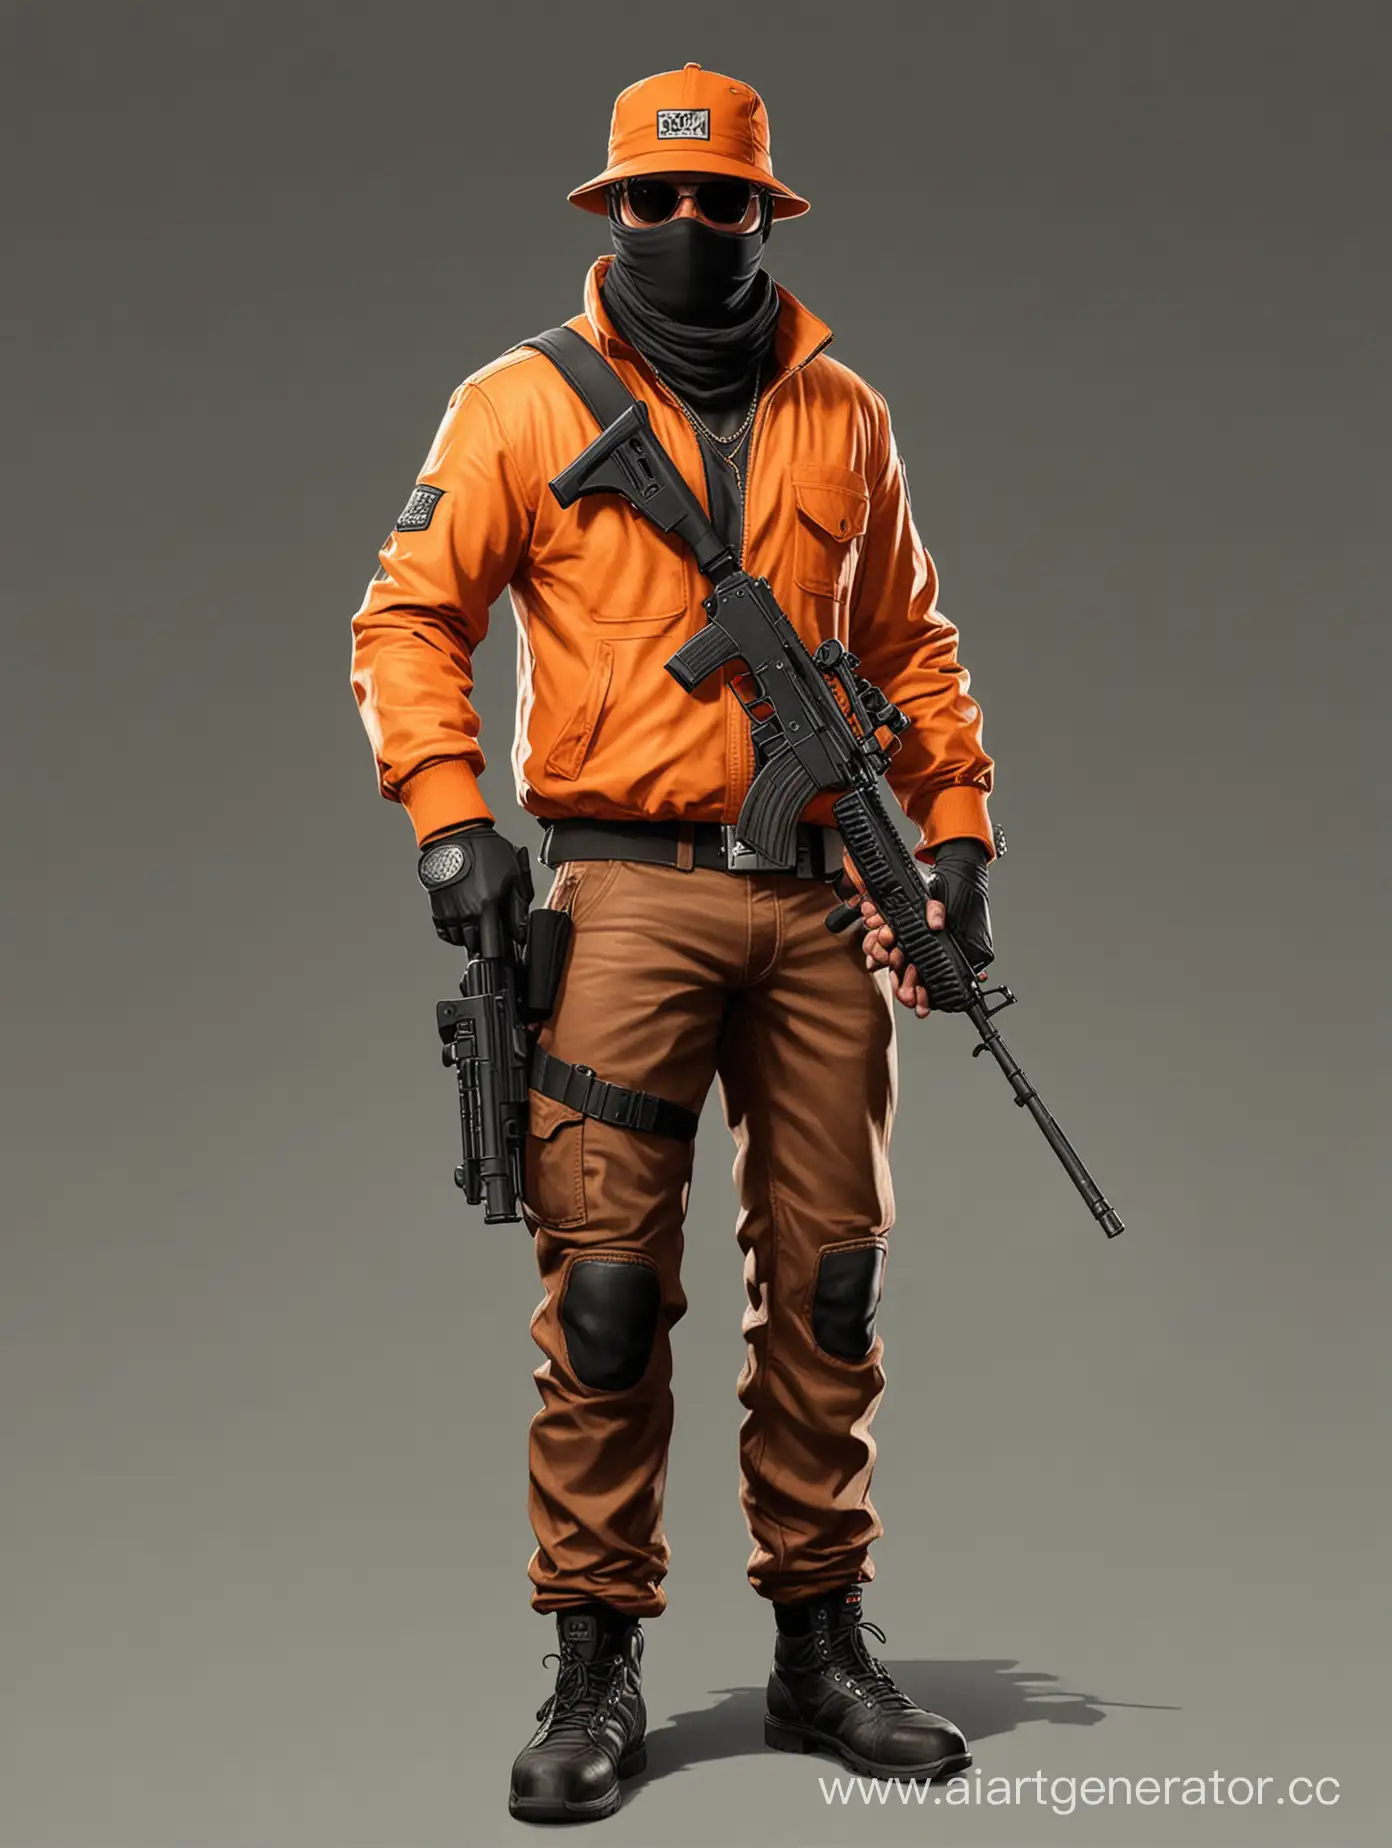 Нарисуй бандита в стиле гта 5 онлайн, в оранжевой одежде, в полный рост, с оружием в руке, больше деталей